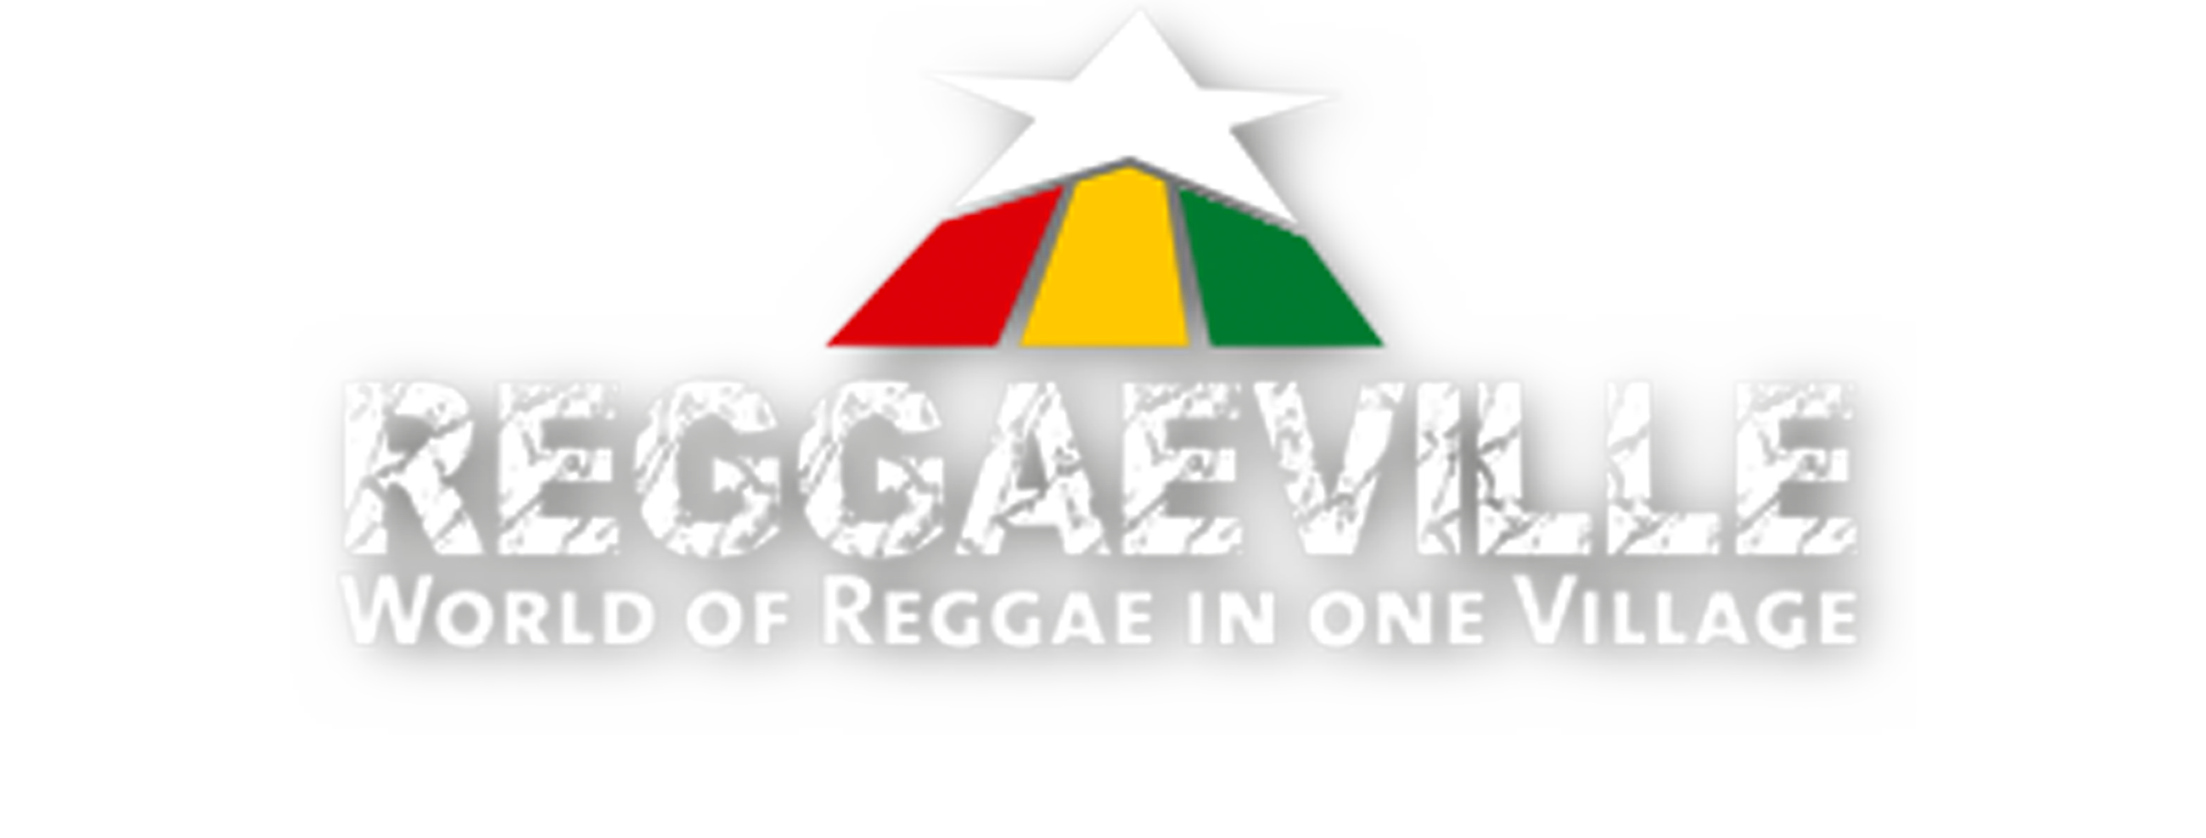 Reggaeville